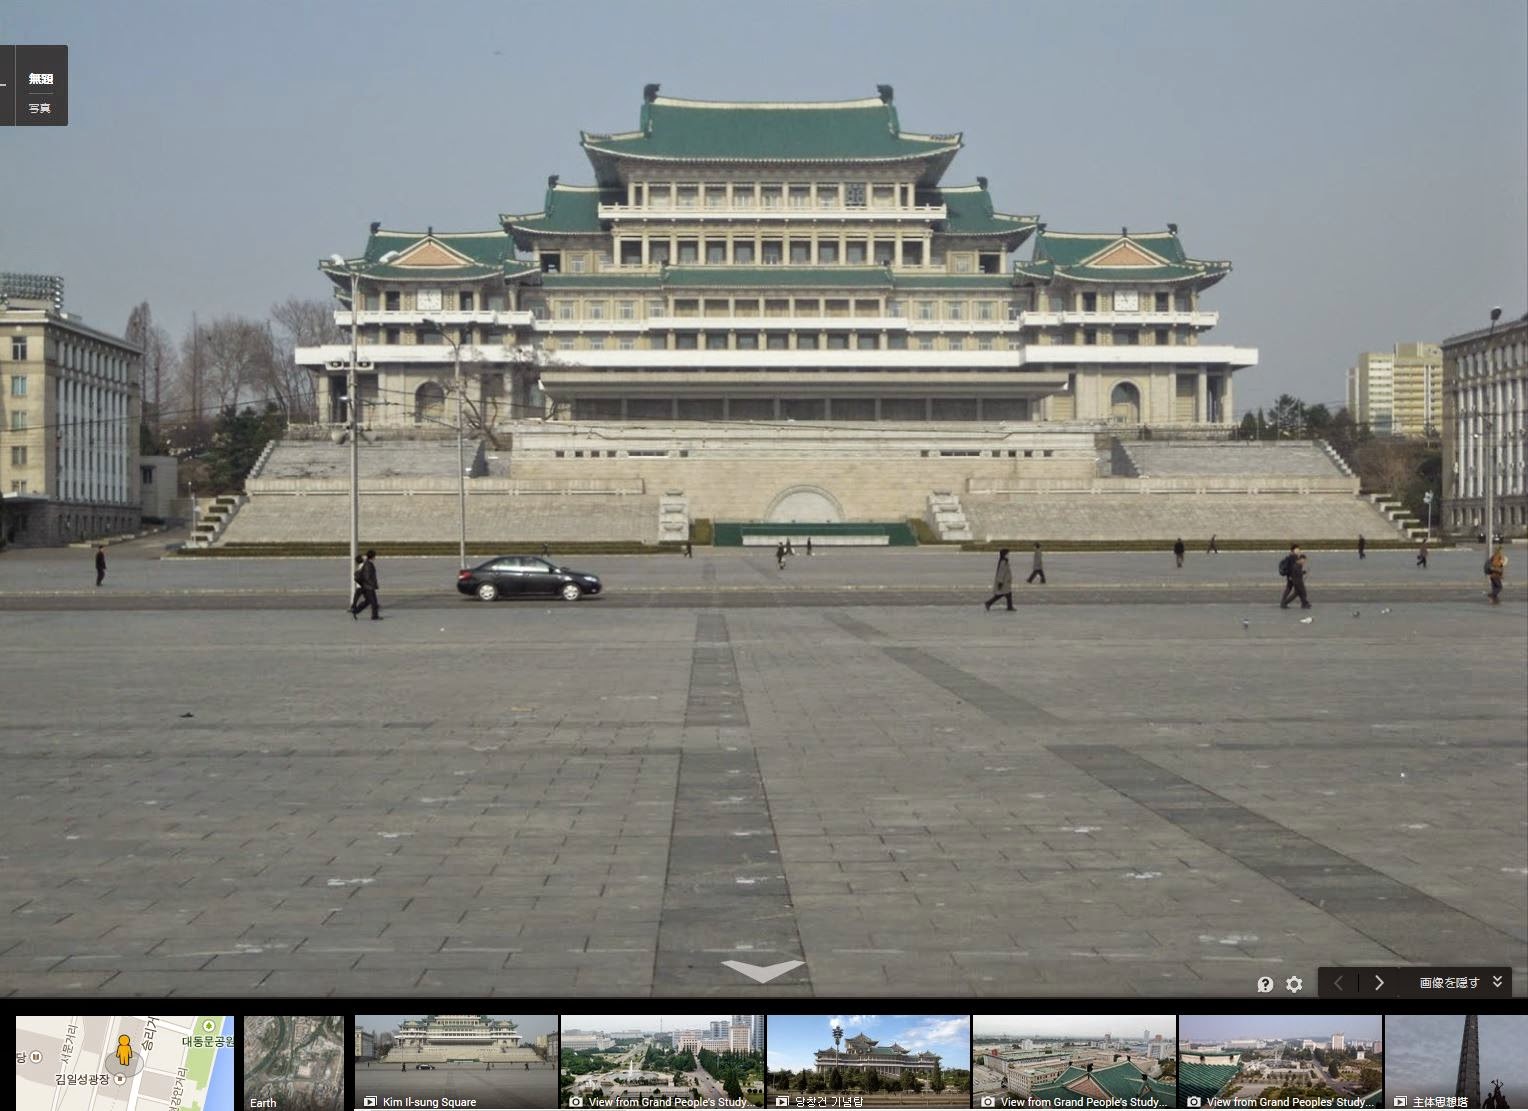 名所 史跡を訪ねて 北朝鮮 首都 平壌の見所 街並みなど